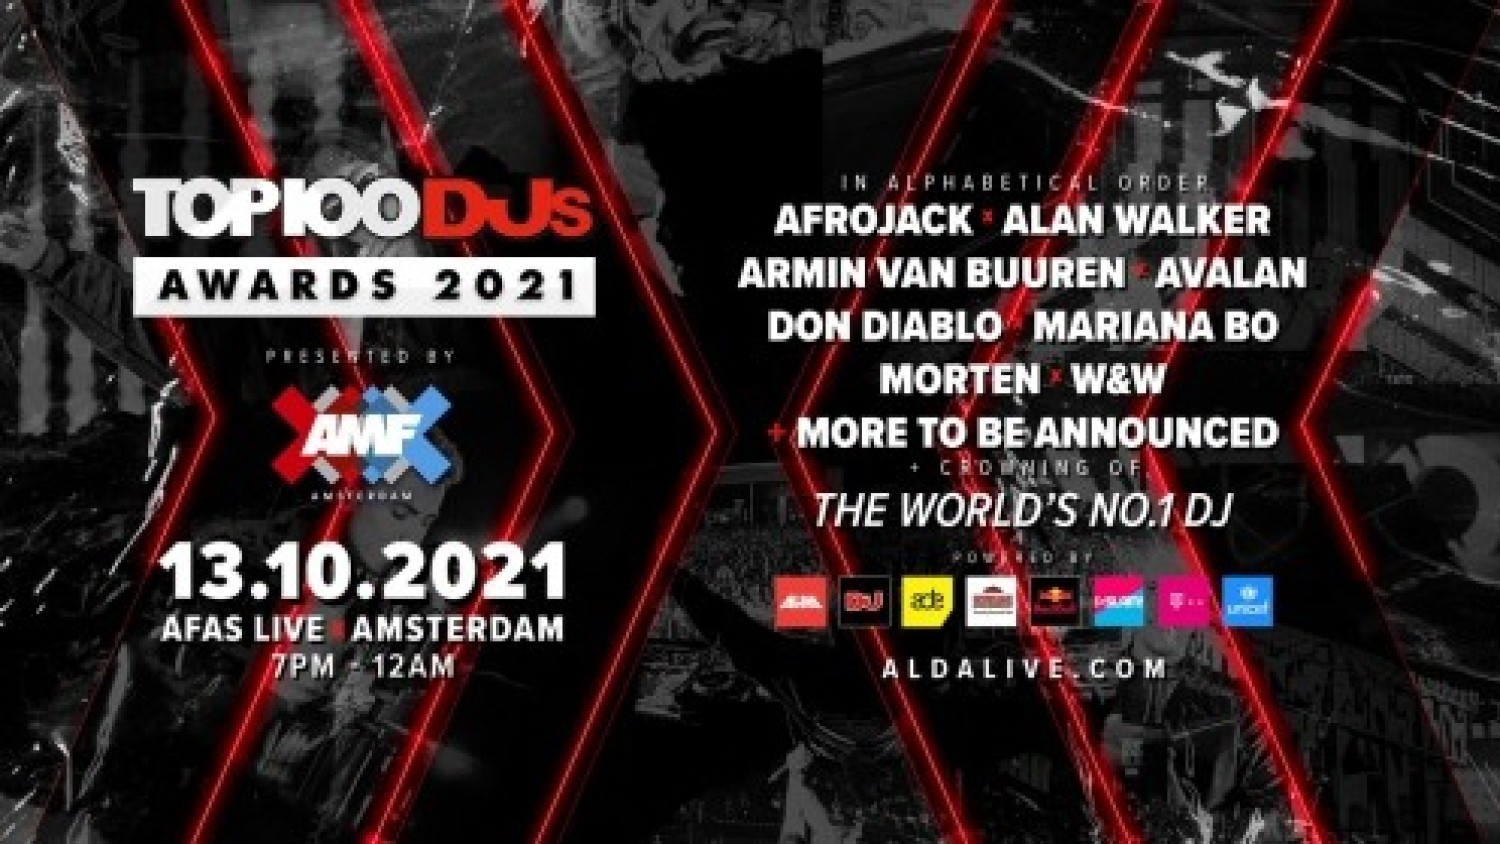 Top100 DJs Awards 2021